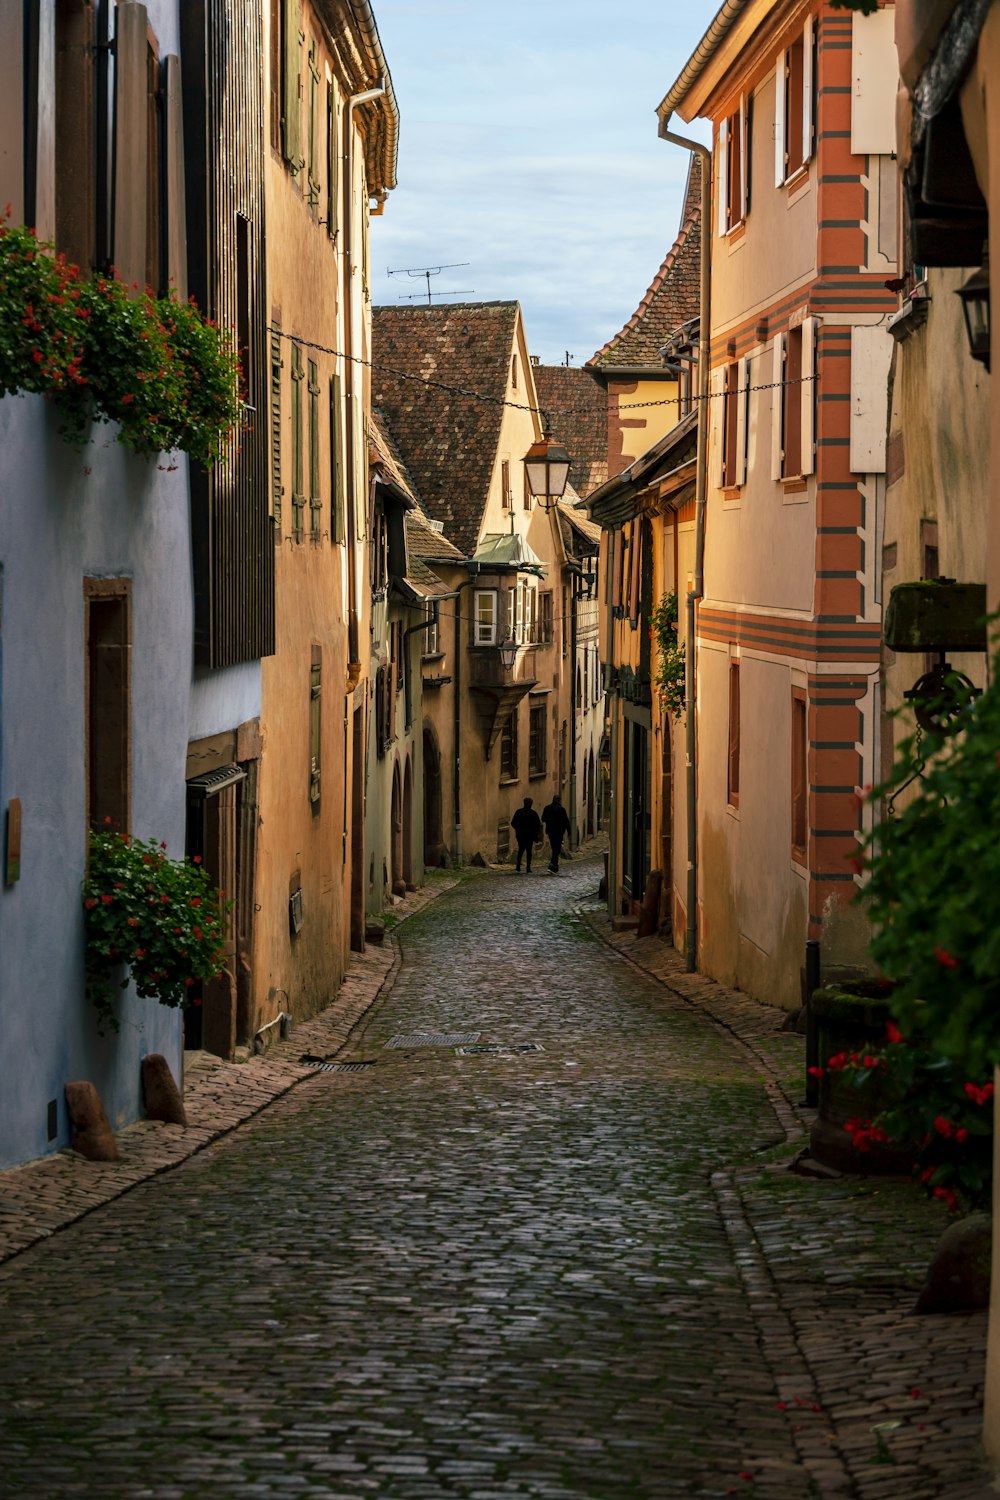 a narrow cobblestone street in an old european town